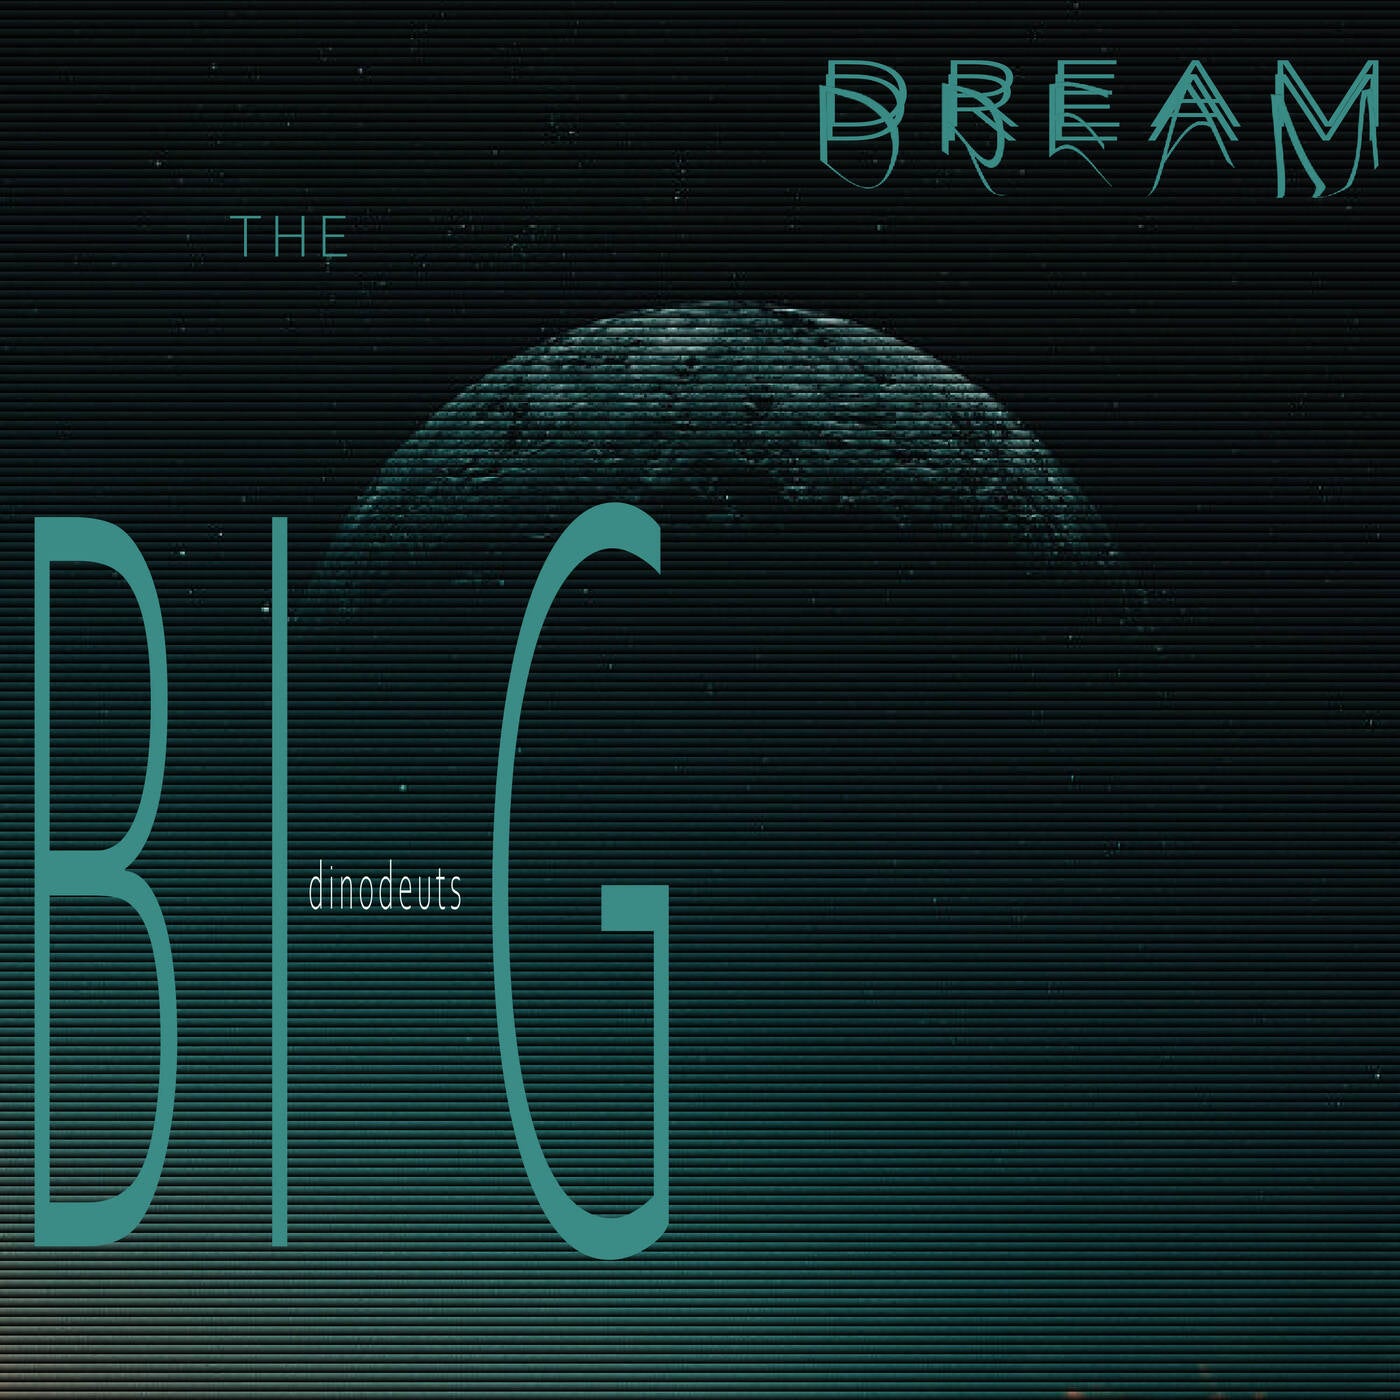 The big dream